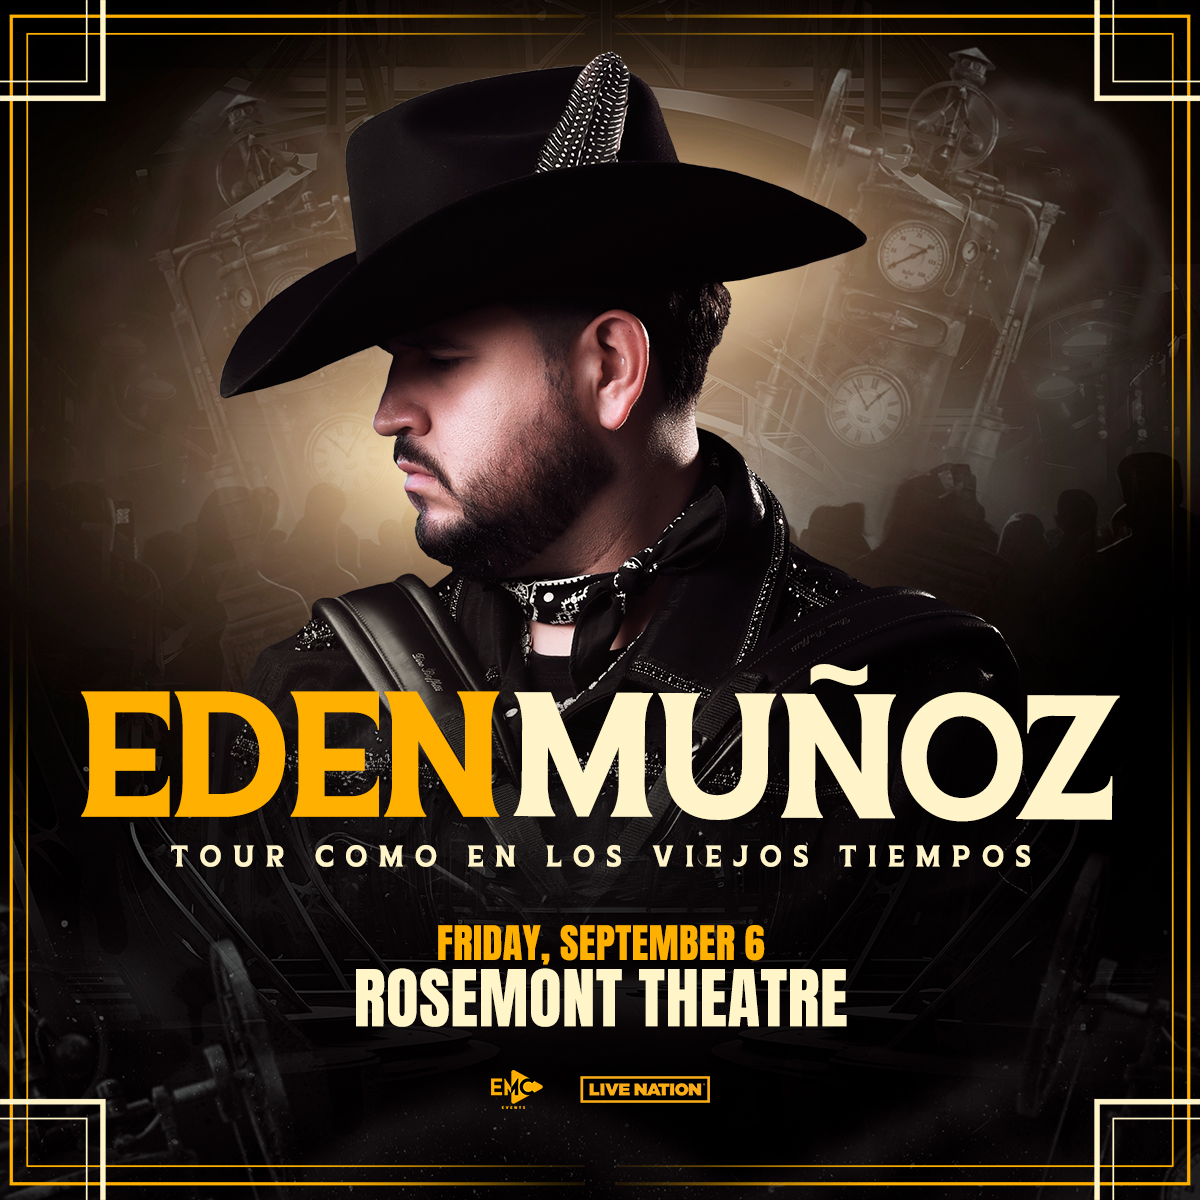 Hey, Edén Muñoz fans! Tour Como En Los Viejos Tiempos is coming to the Rosemont Theatre! Tickets on sale now